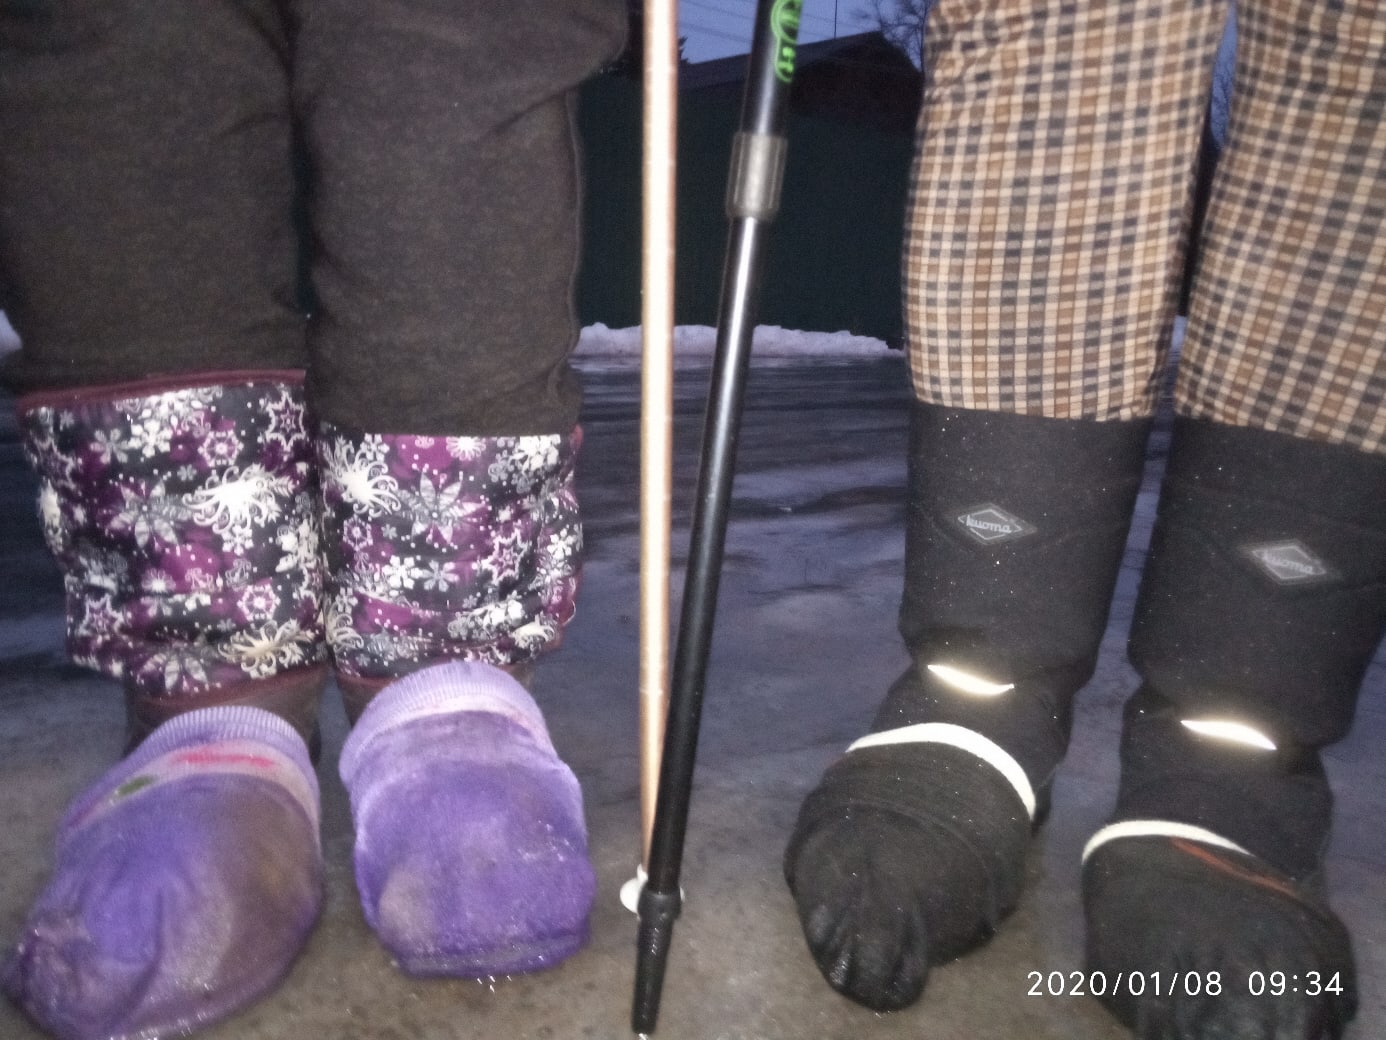 Спортсмены-любители в Карелии надели на обувь носки, чтобы пройти дистанцию в гололед (ФОТО)